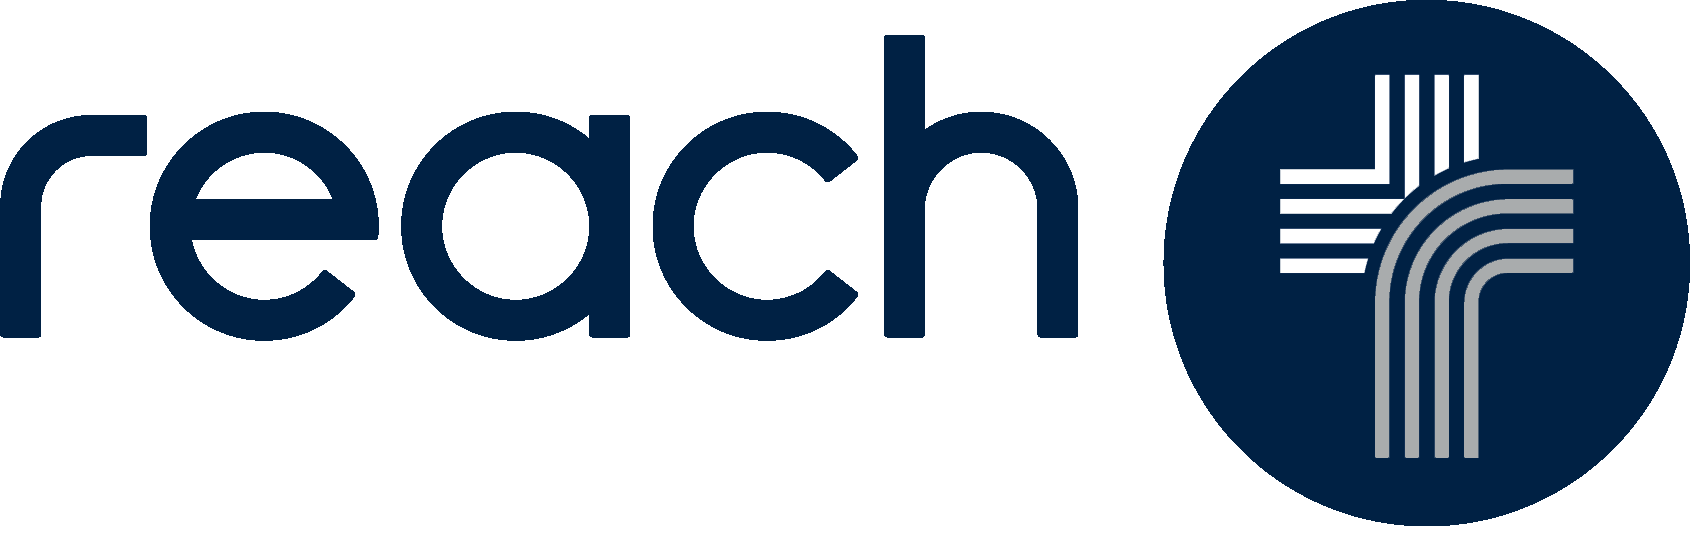 Contact Us Reach Church